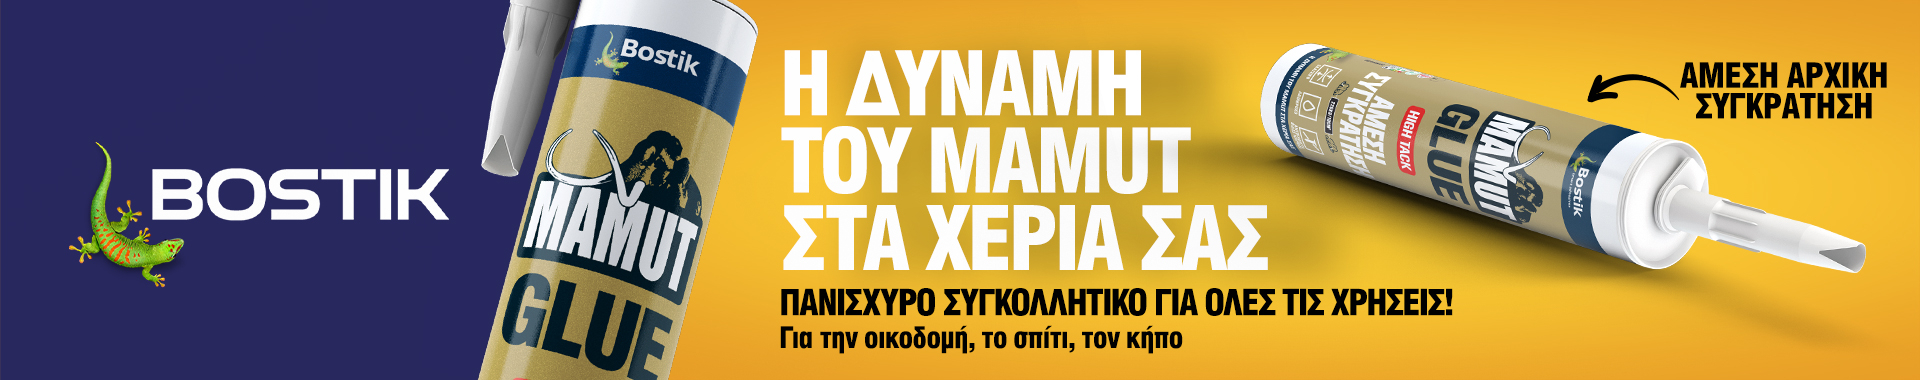 Bostik DIY Greece homepage banner desktop 2